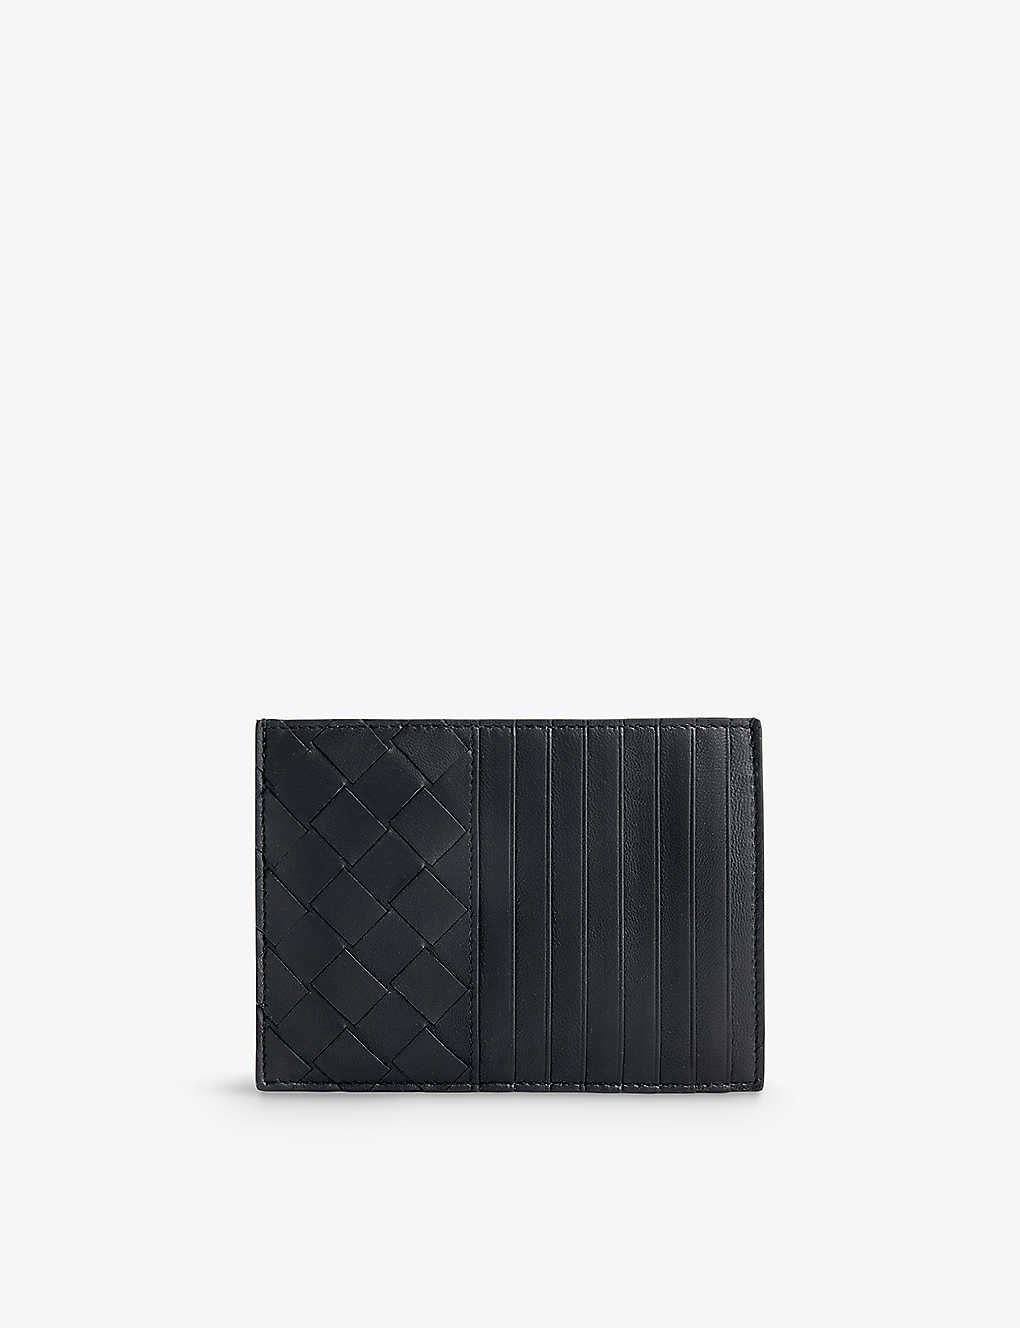 Bottega Veneta Intrecciato Leather Card Holder In Black-gold